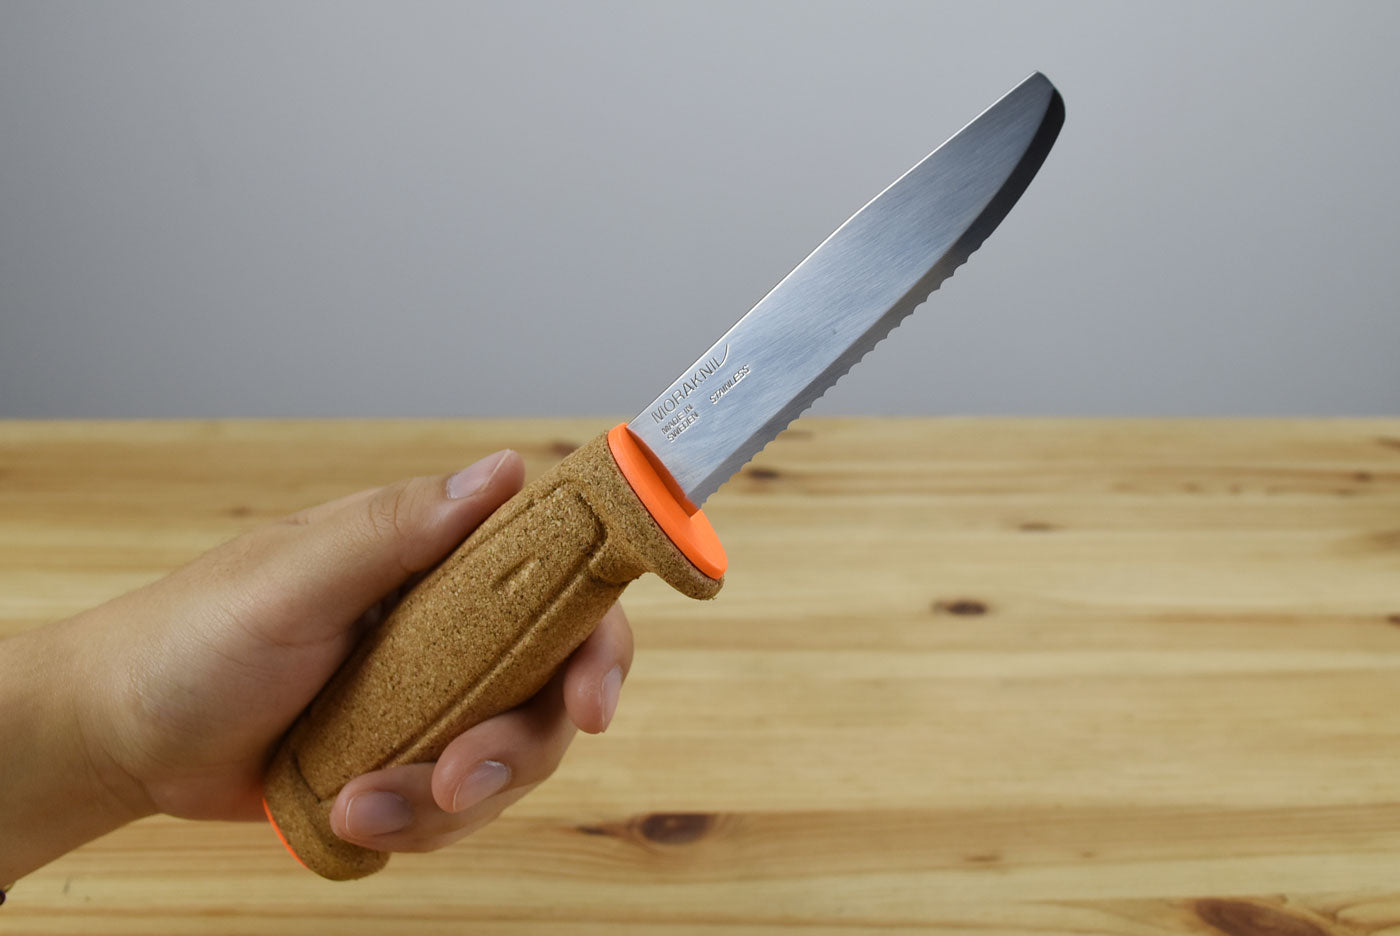 Morakniv Floating SRT Safe Knife (Hi-Vis Orange)